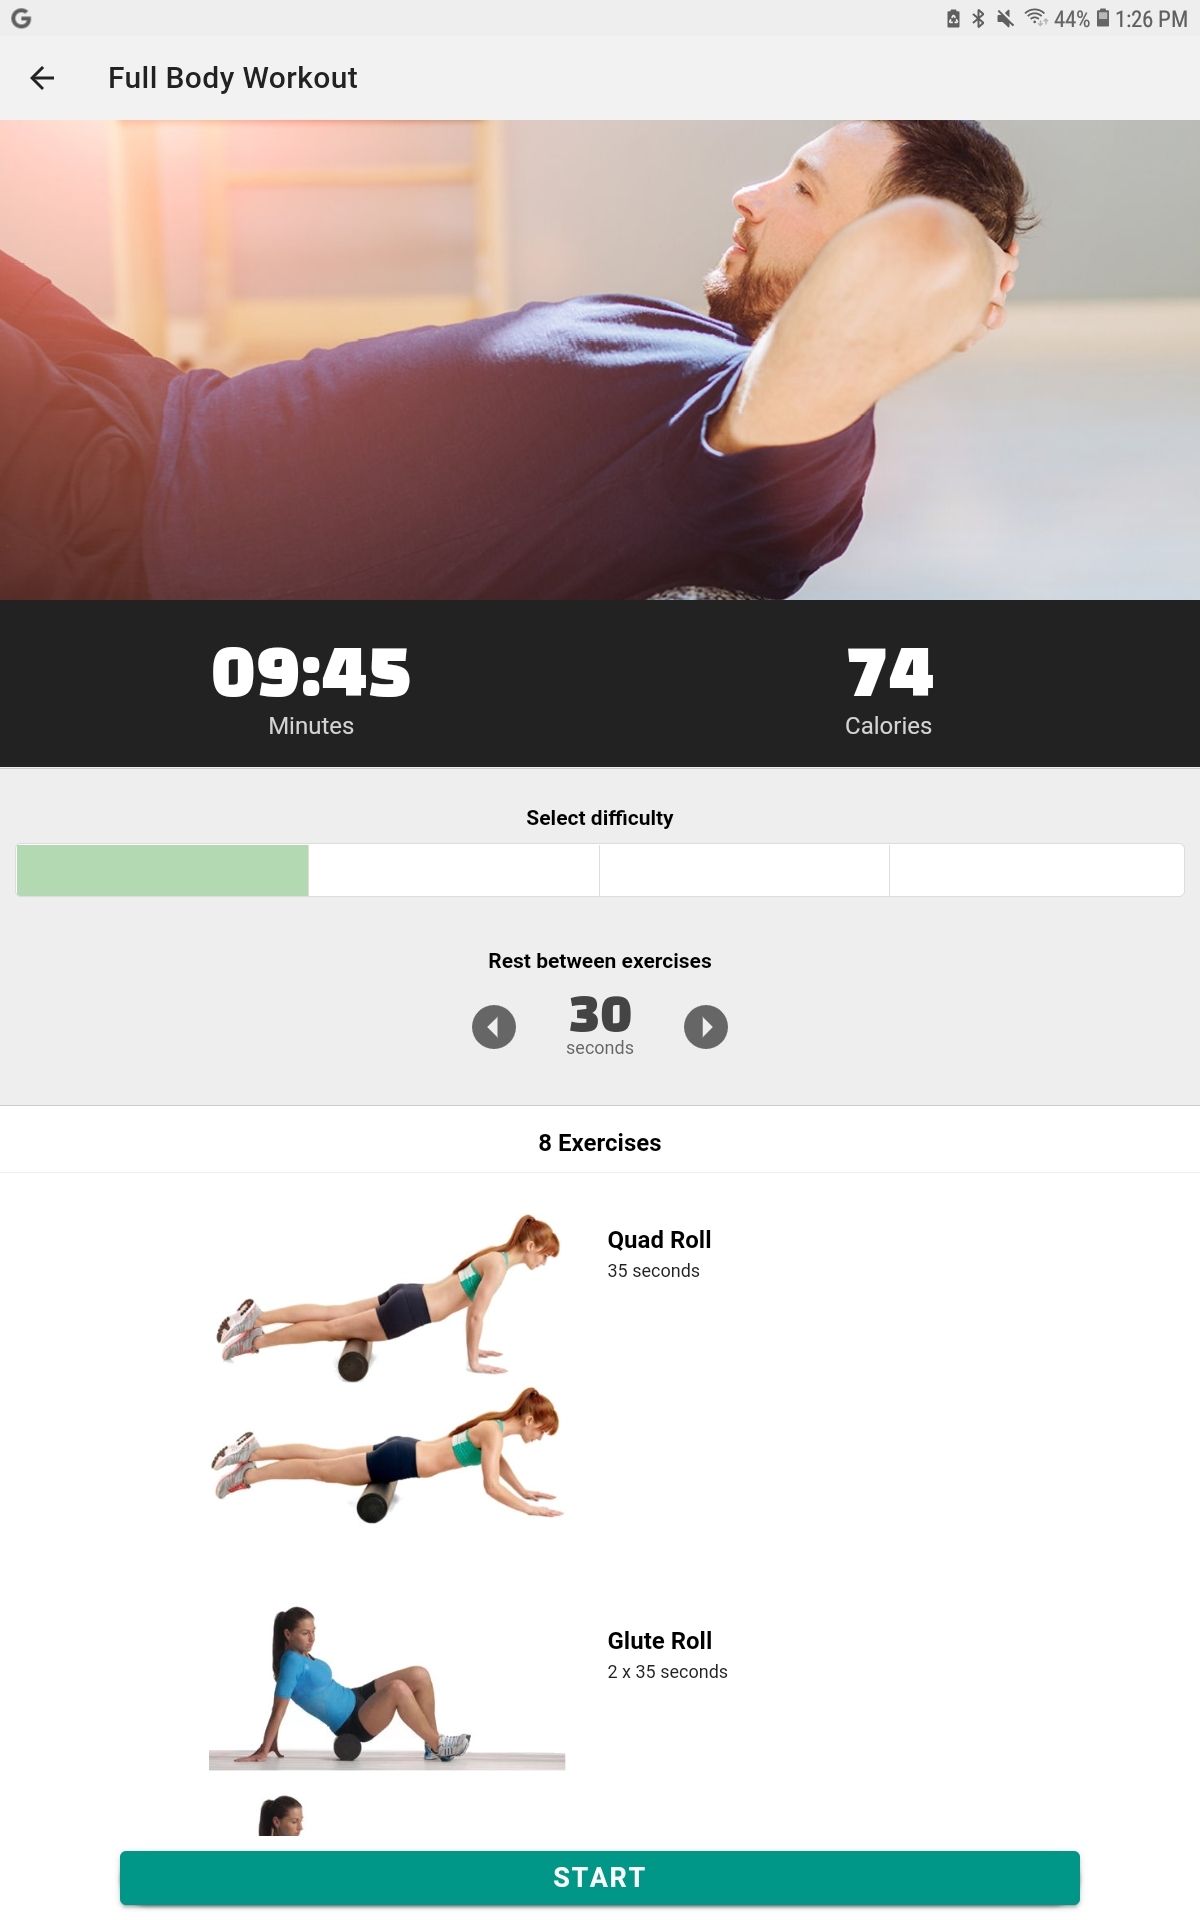 Foam Roller Exercises app full body workout